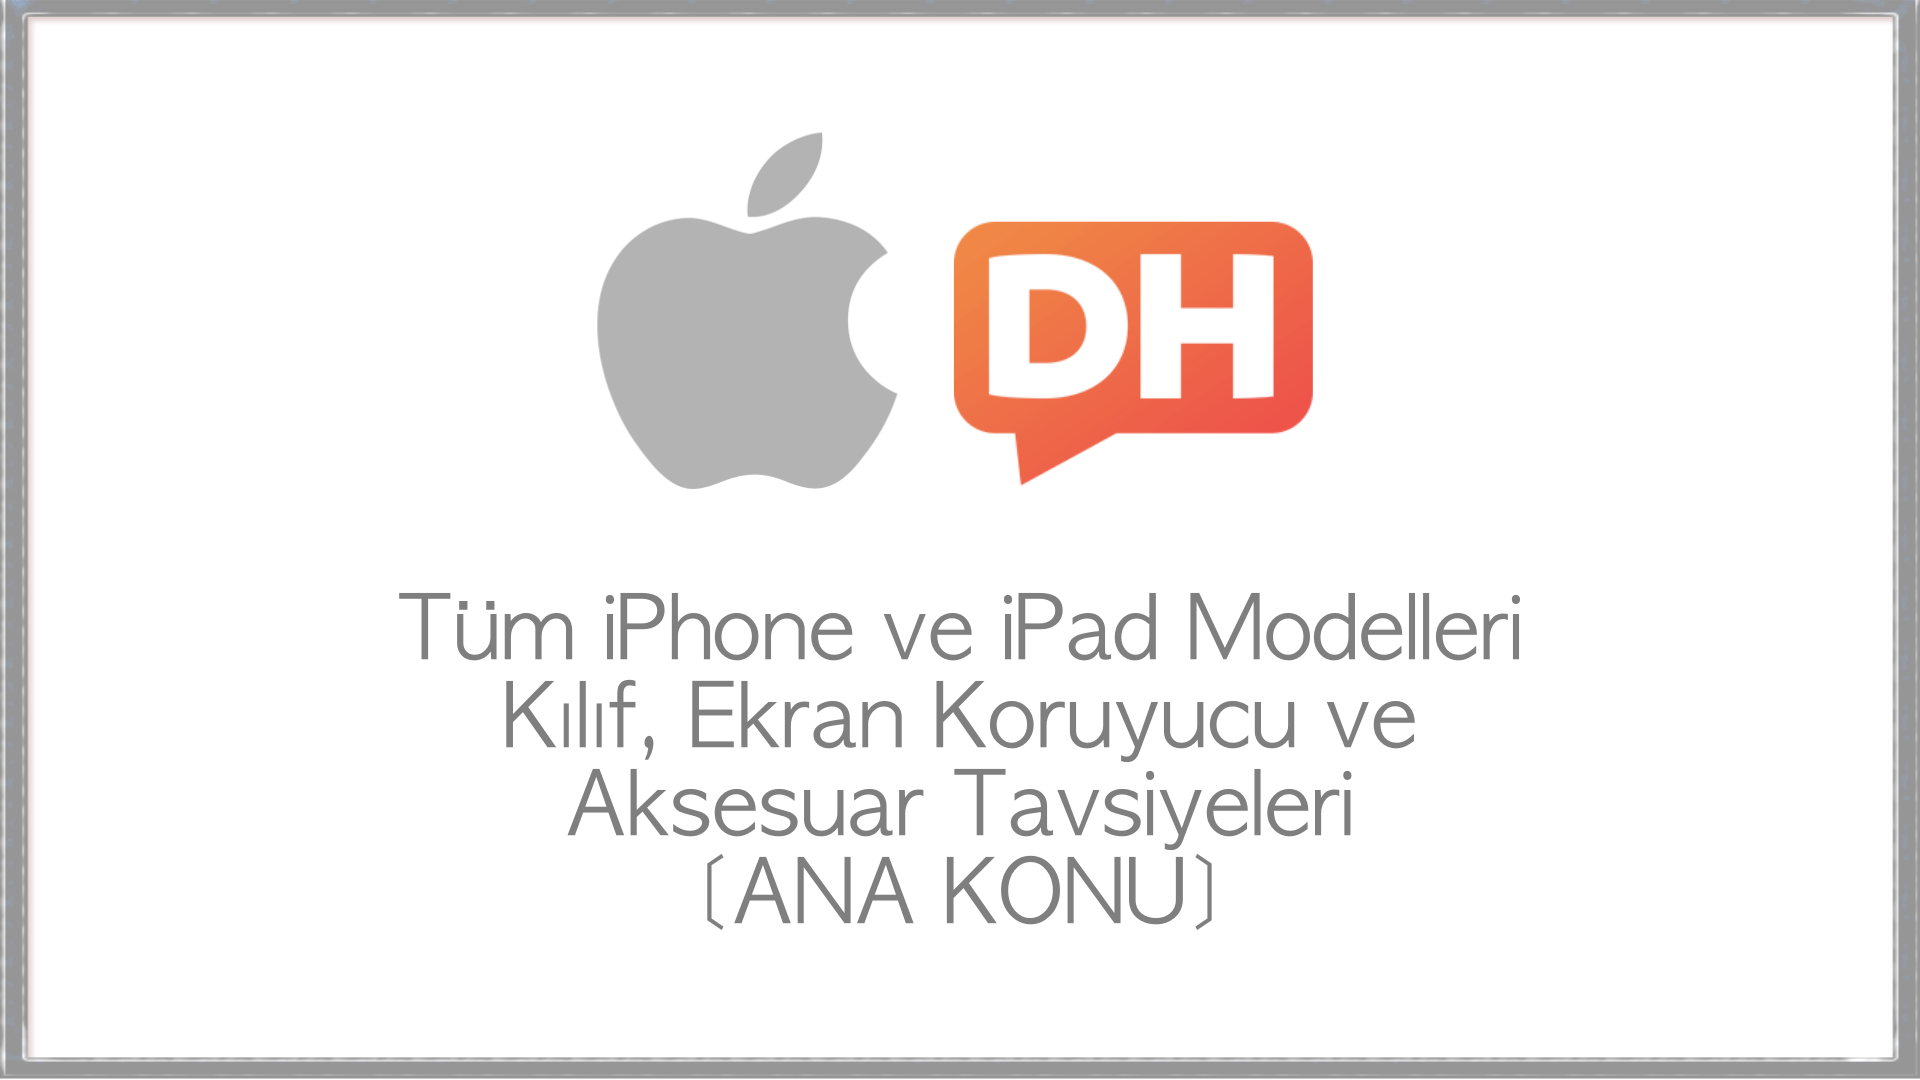 Tüm iPhone ve iPad Modelleri | Kılıf, Ekran Koruyucu ve Aksesuar Tavsiyeleri [ANA KONU]